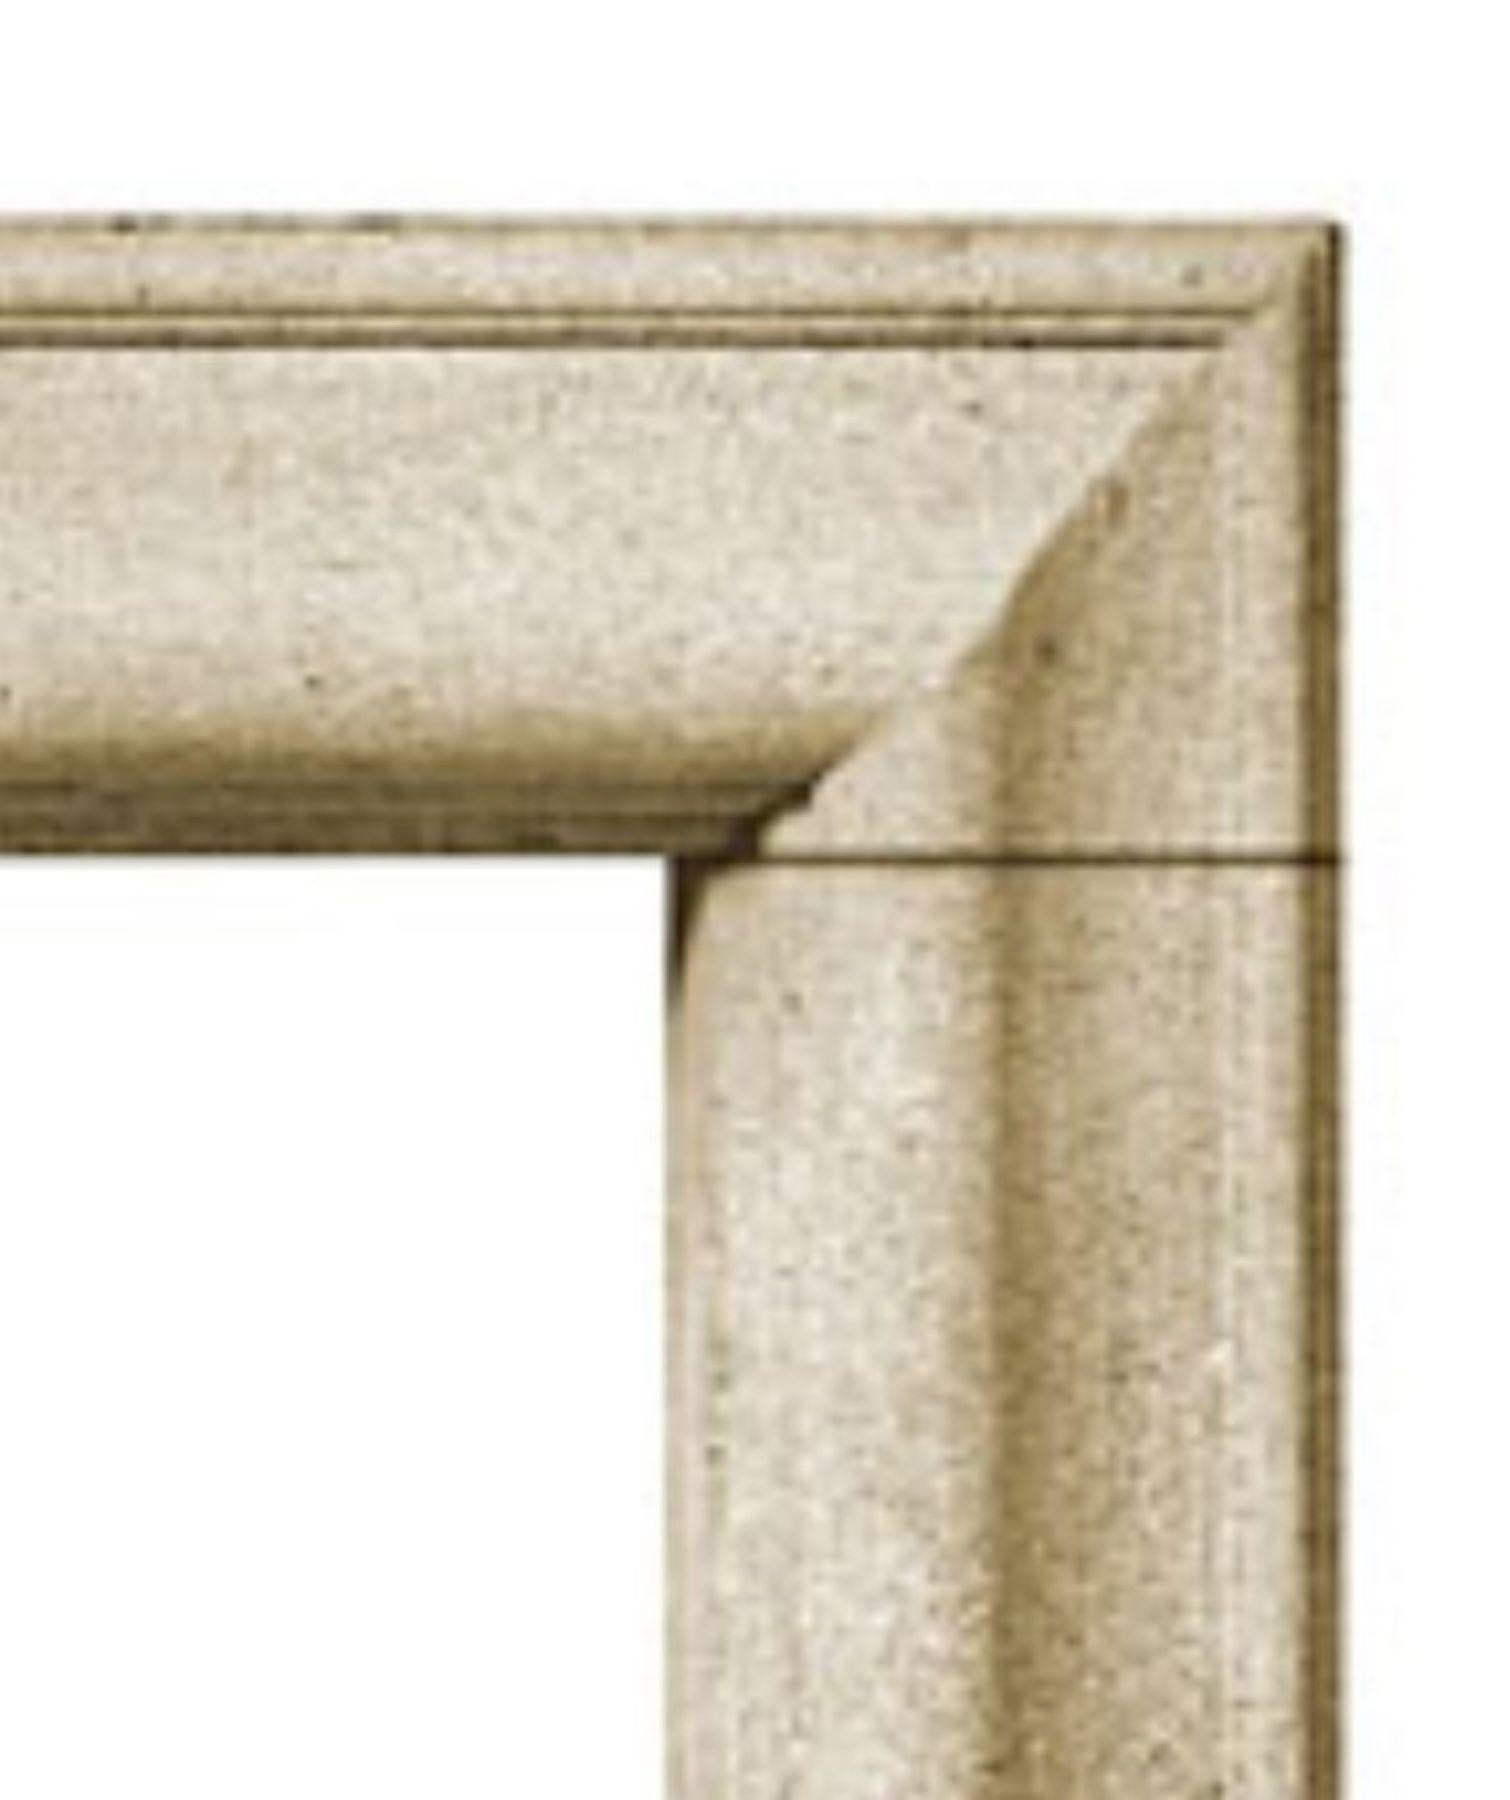 La cheminée en pierre Bolection A partage un profil classique de style Bolection avec notre design Bolection B, mais sans l'étagère supérieure et les plinthes.  Le profil de la moulure se courbe vers l'extérieur puis vers l'intérieur, dans le style